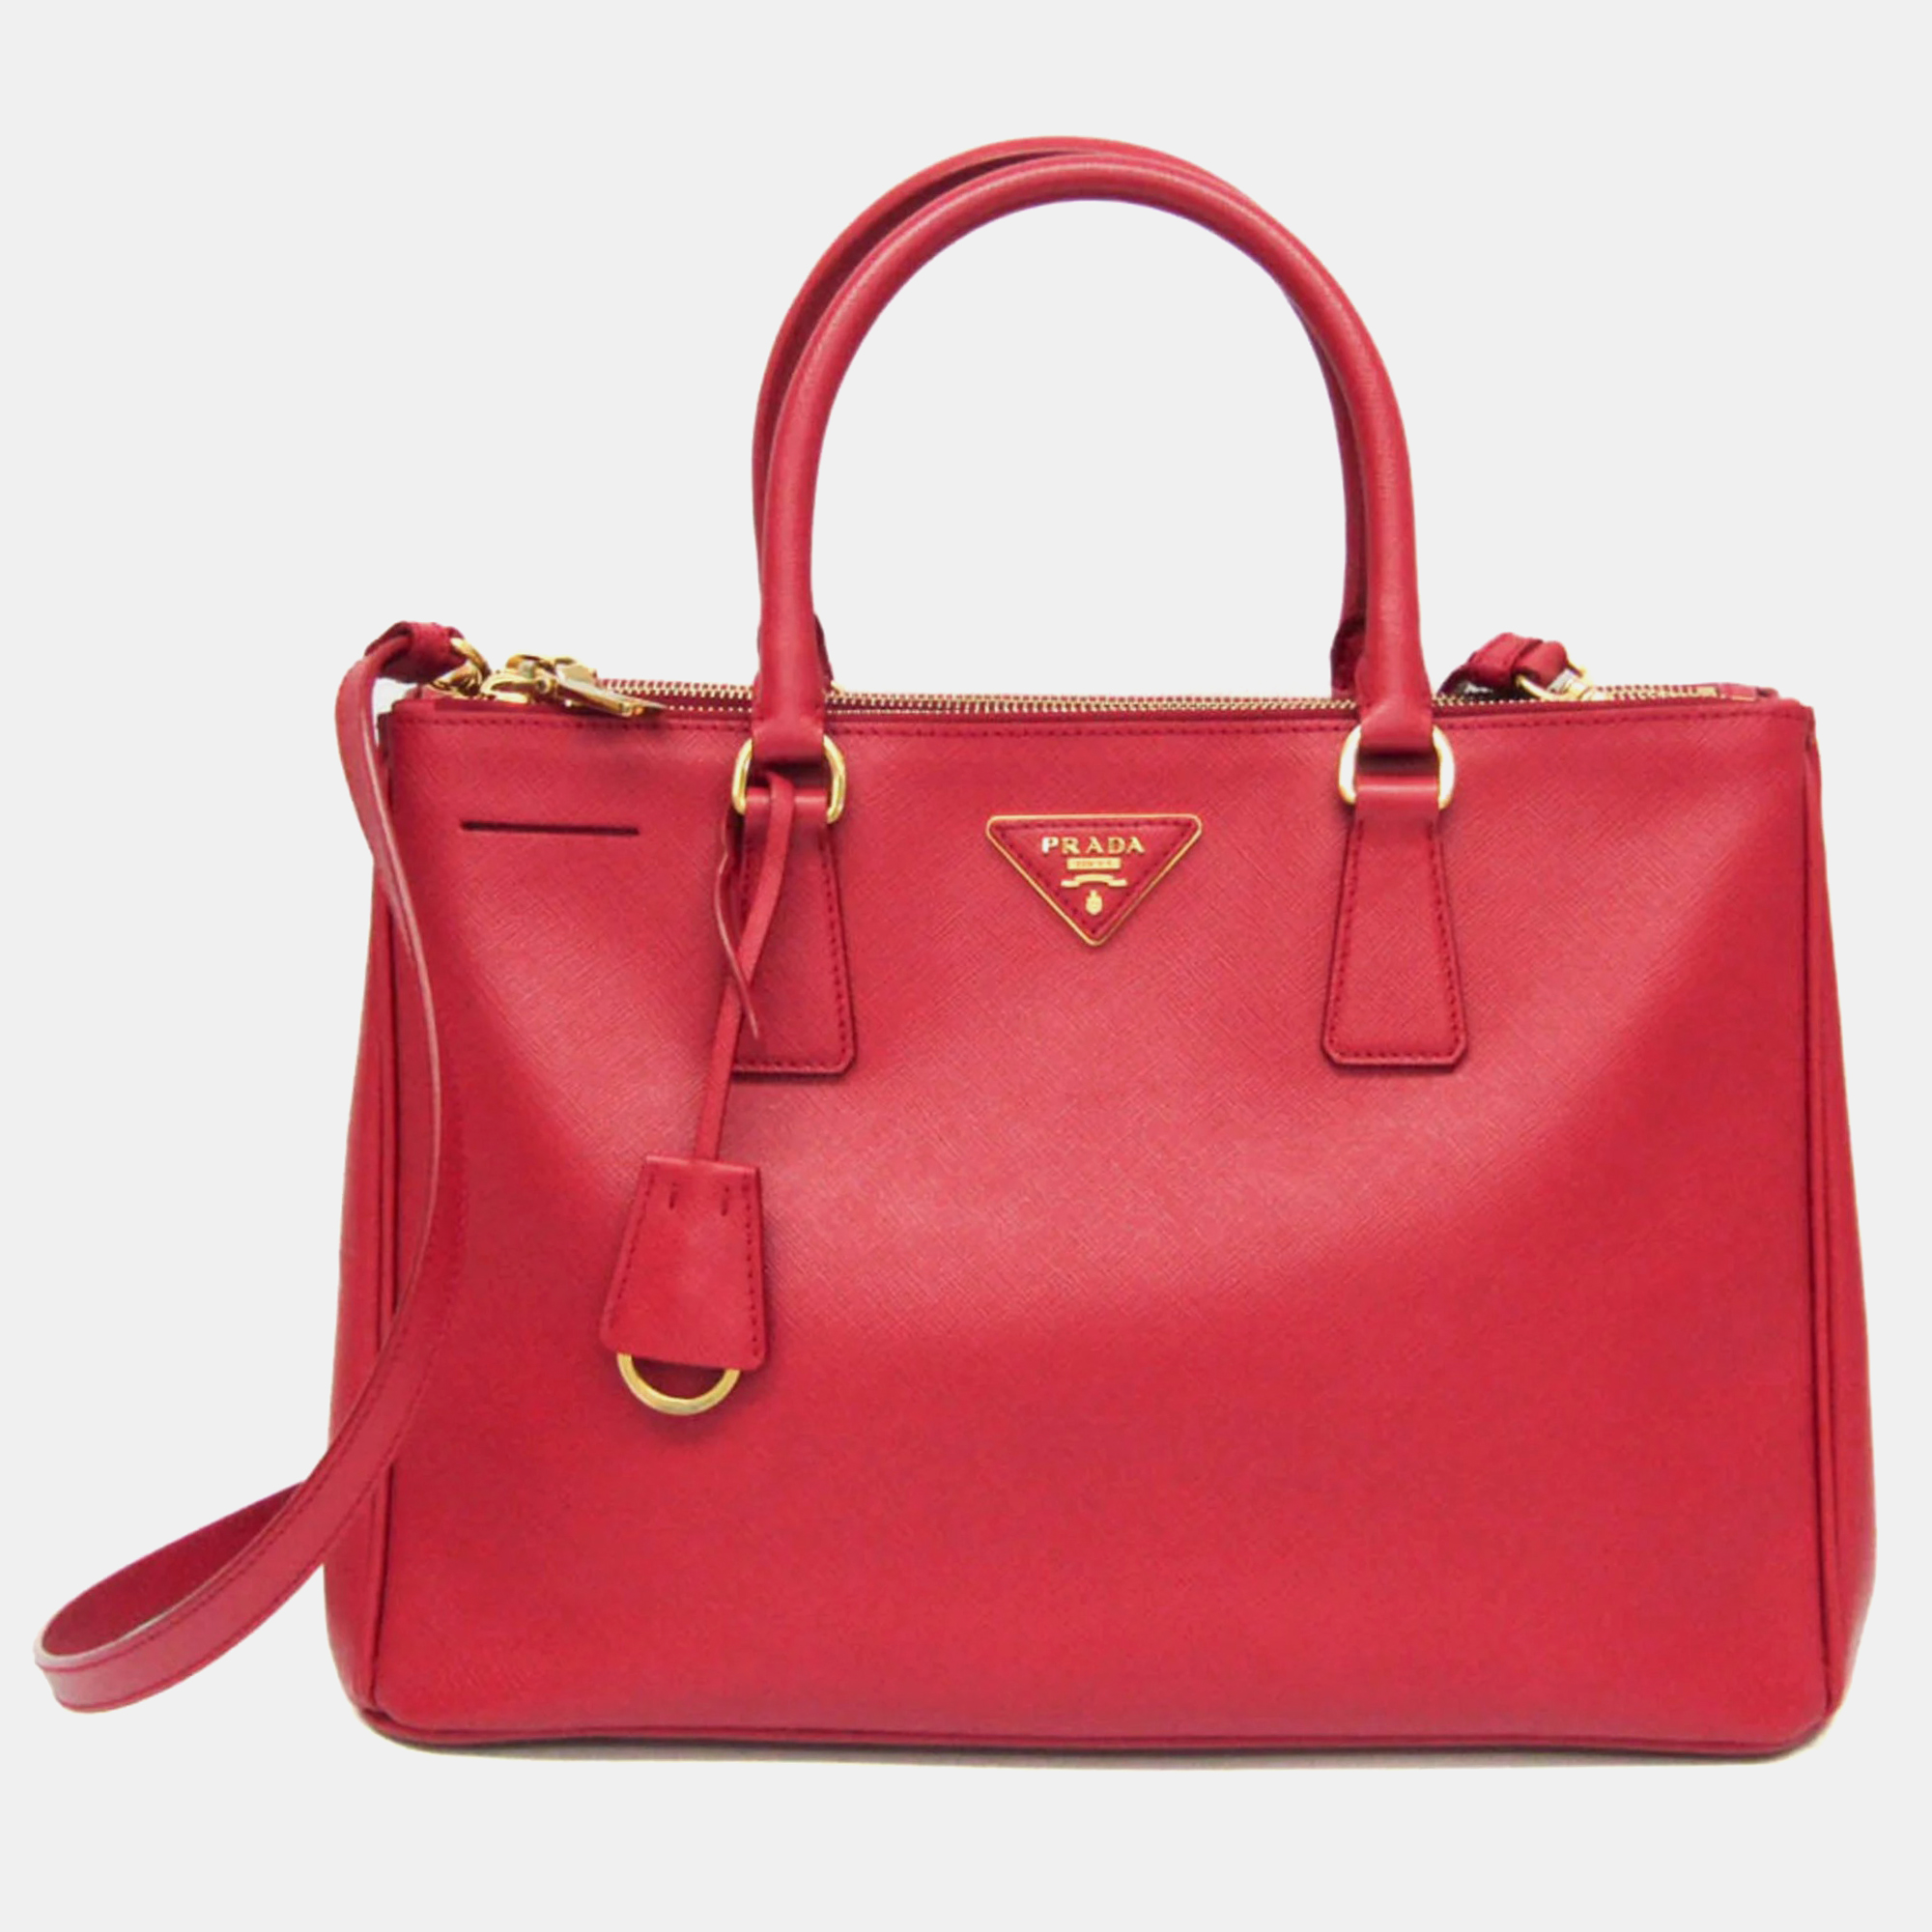 

Prada Fuoco Saffiano Lux Leather Galleria Tote Bag, Red